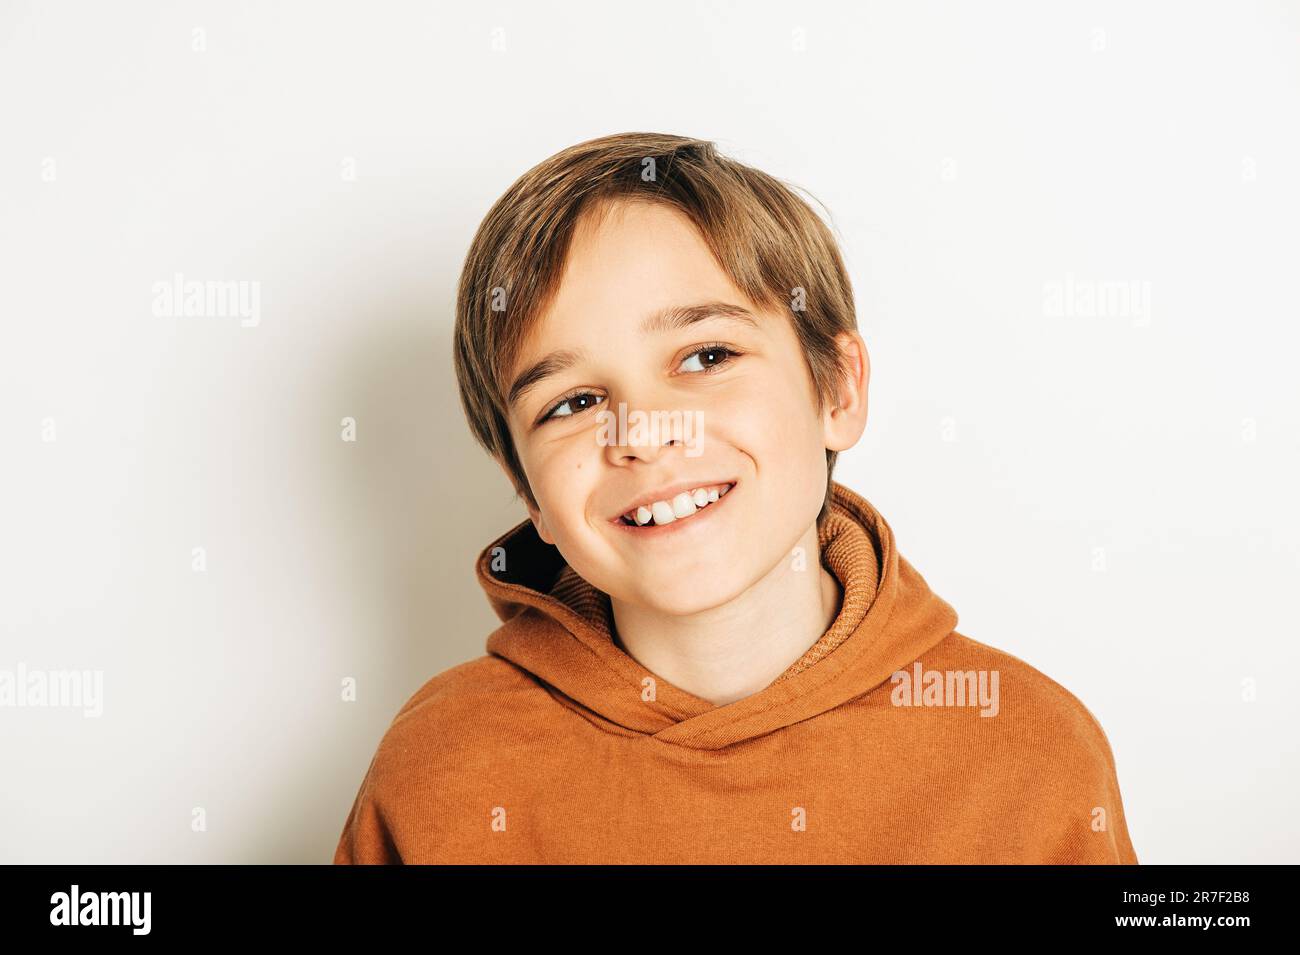 Photo studio d'un beau garçon de 10 ans aux cheveux blonds, portant un sweat à capuche marron, posant sur fond blanc, regardant vers le haut Banque D'Images